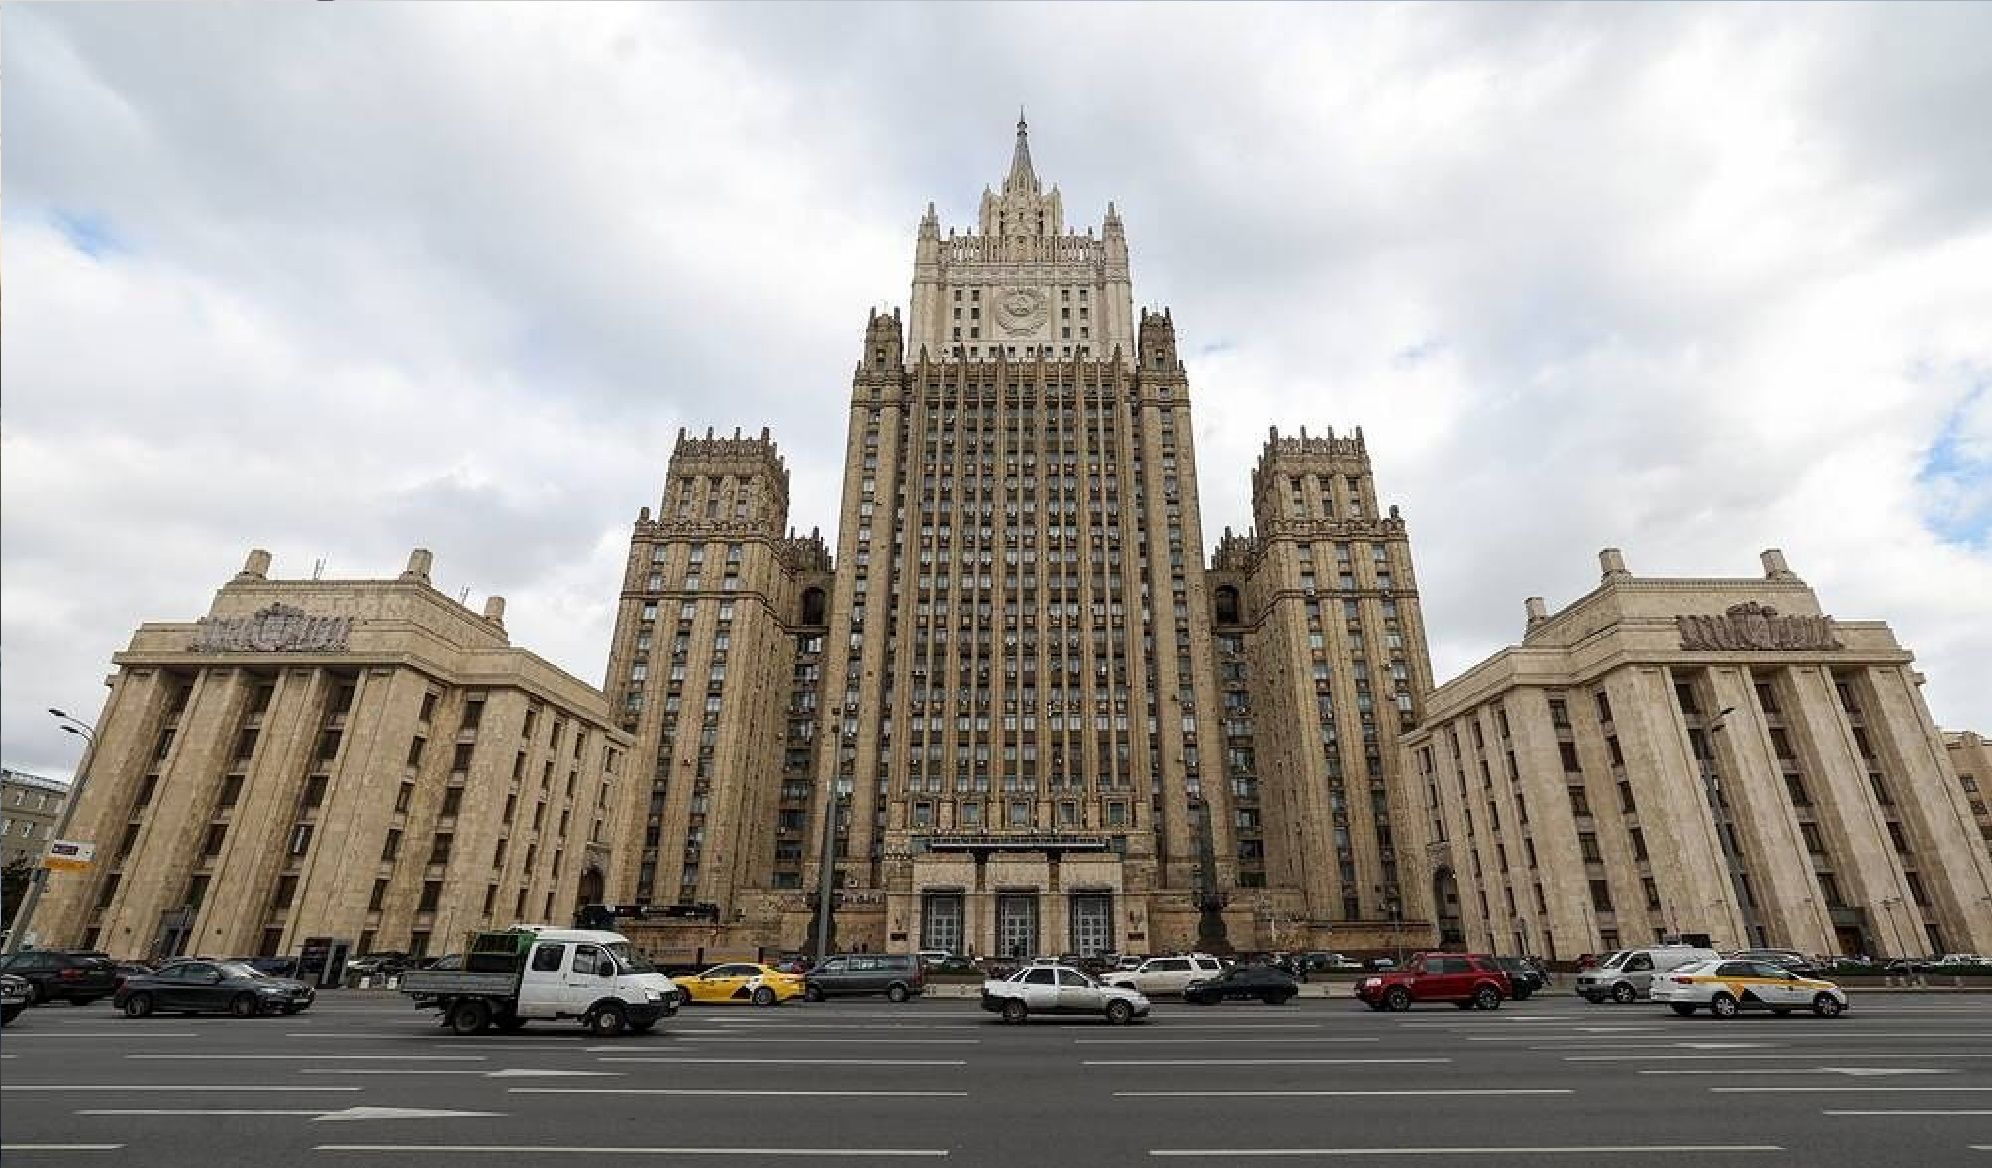 واکنش مسکو به پیام تبریک سفارت آمریکا به زنان روس + عکس